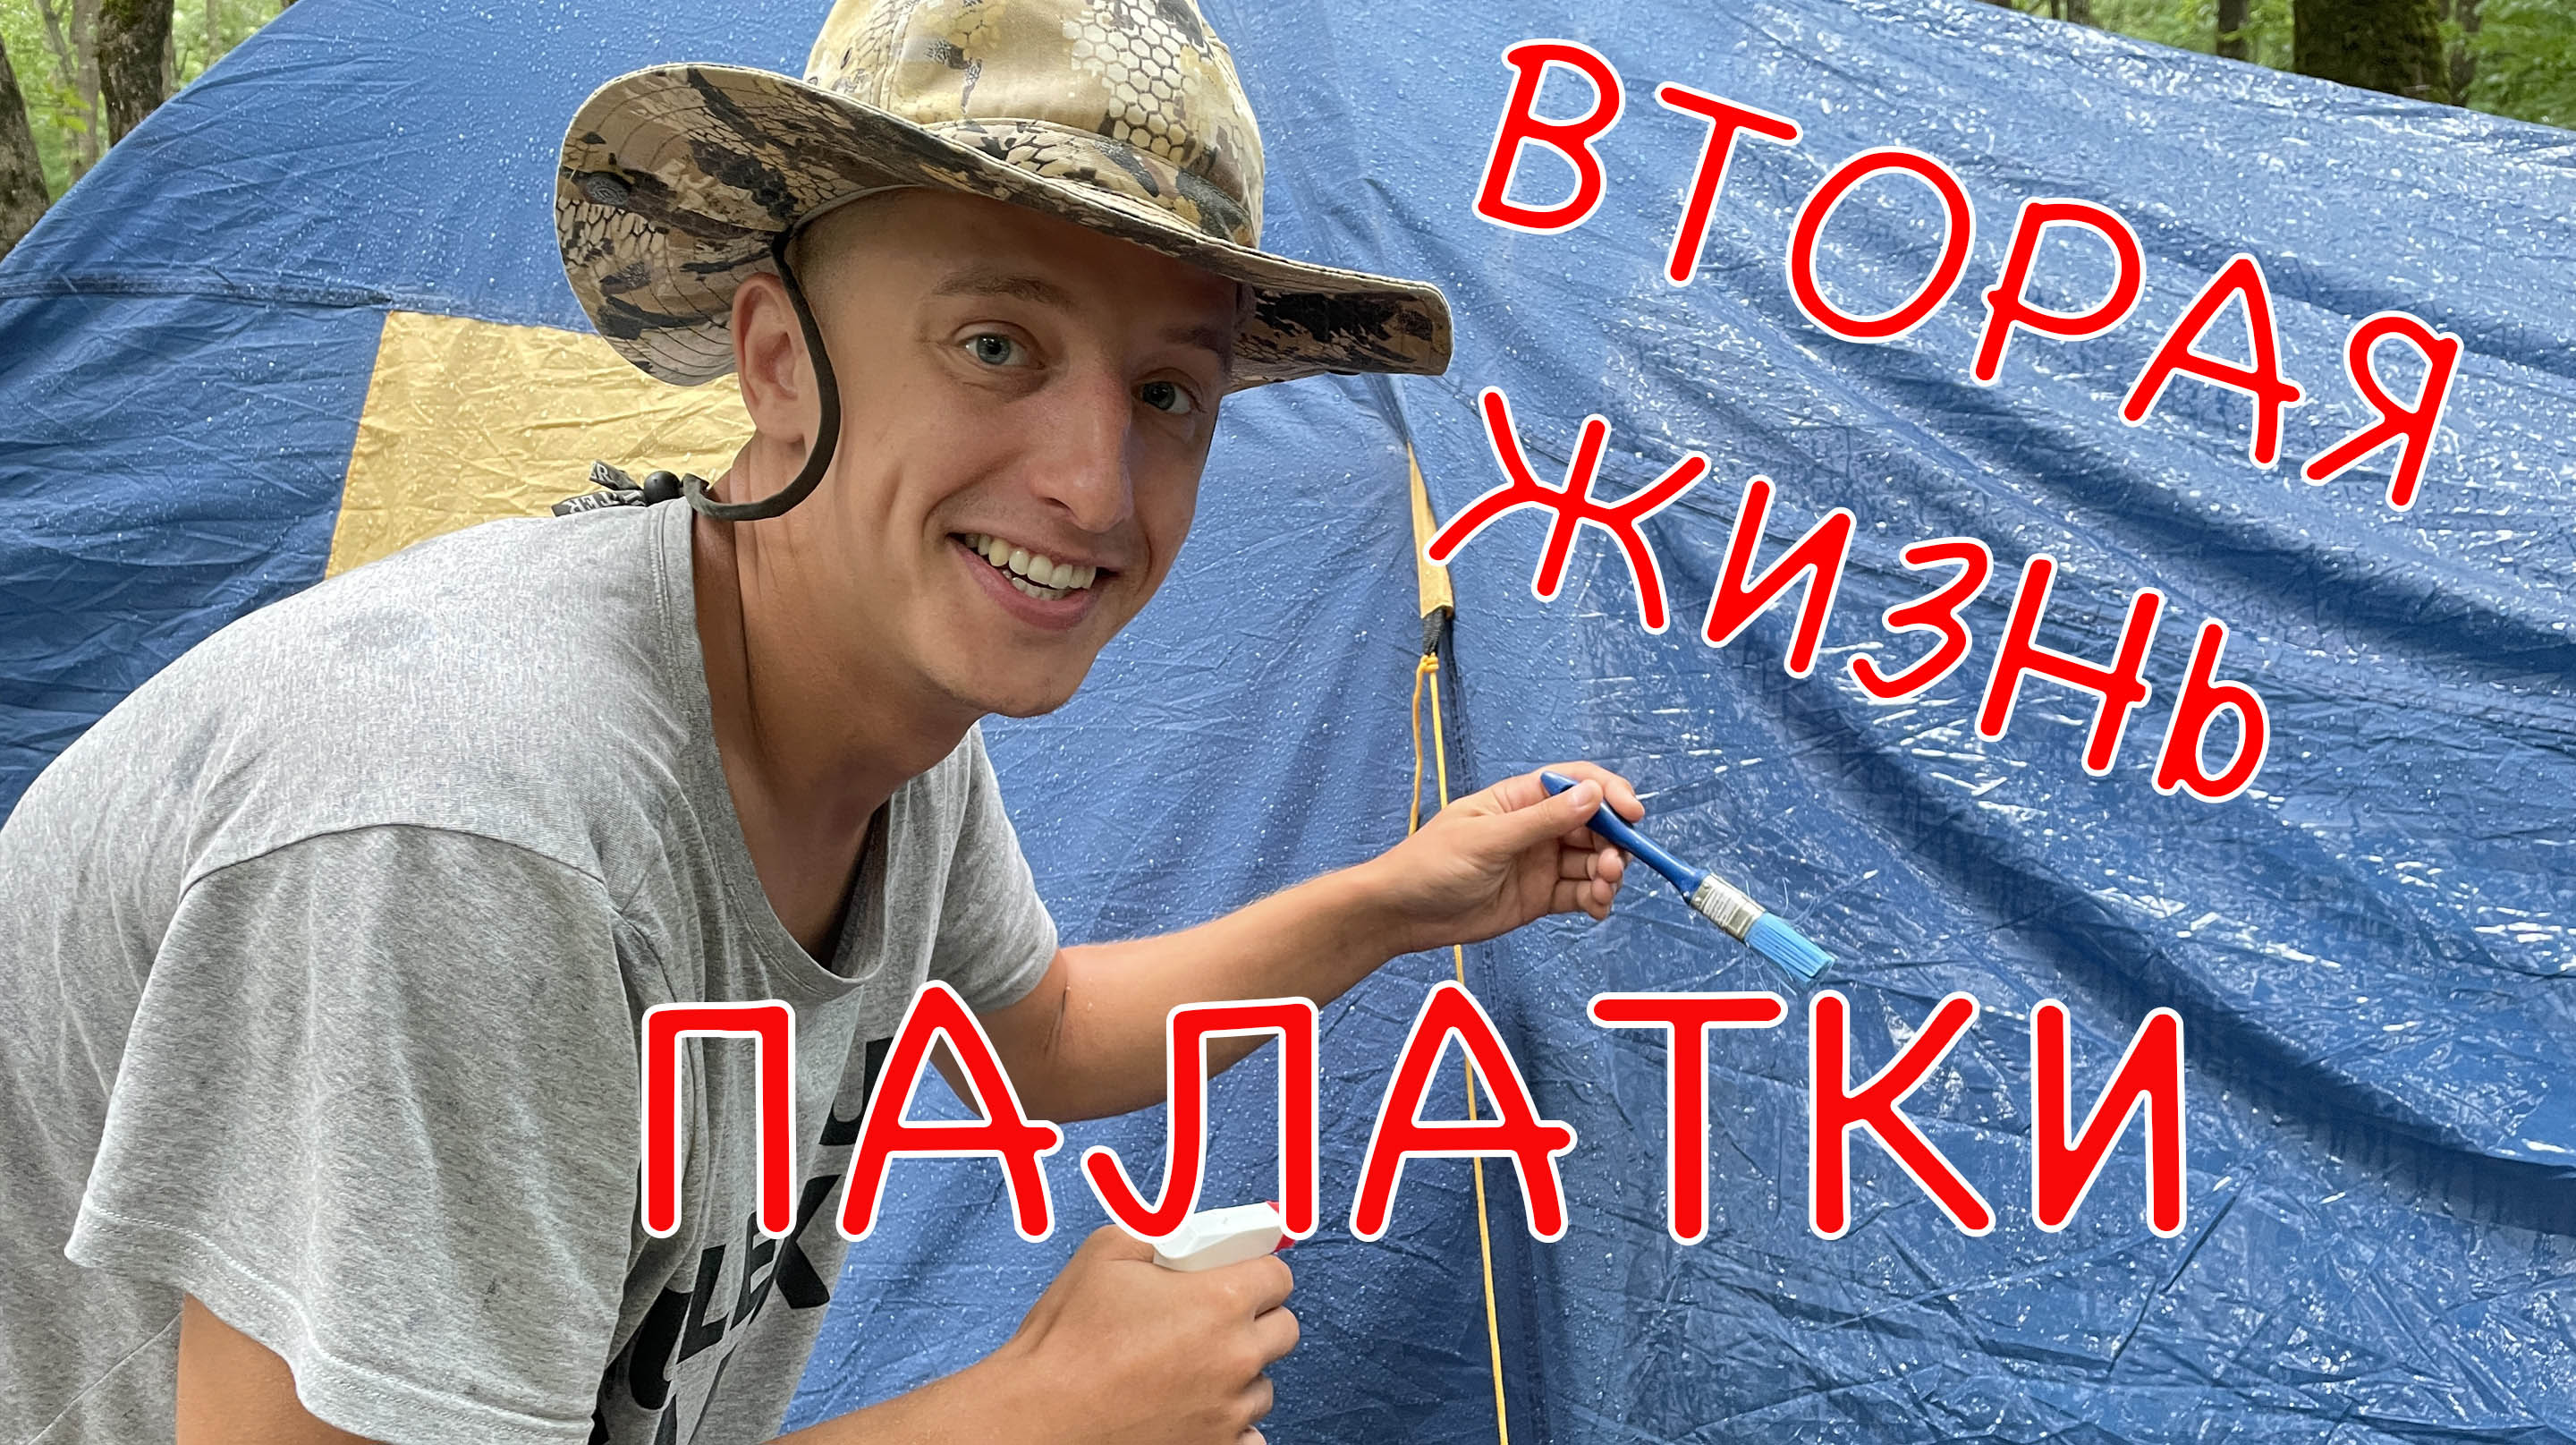 Не выкидывай старую палатку пока не посмотришь это видео! Лайфхак который сэкономит 30000 рублей.